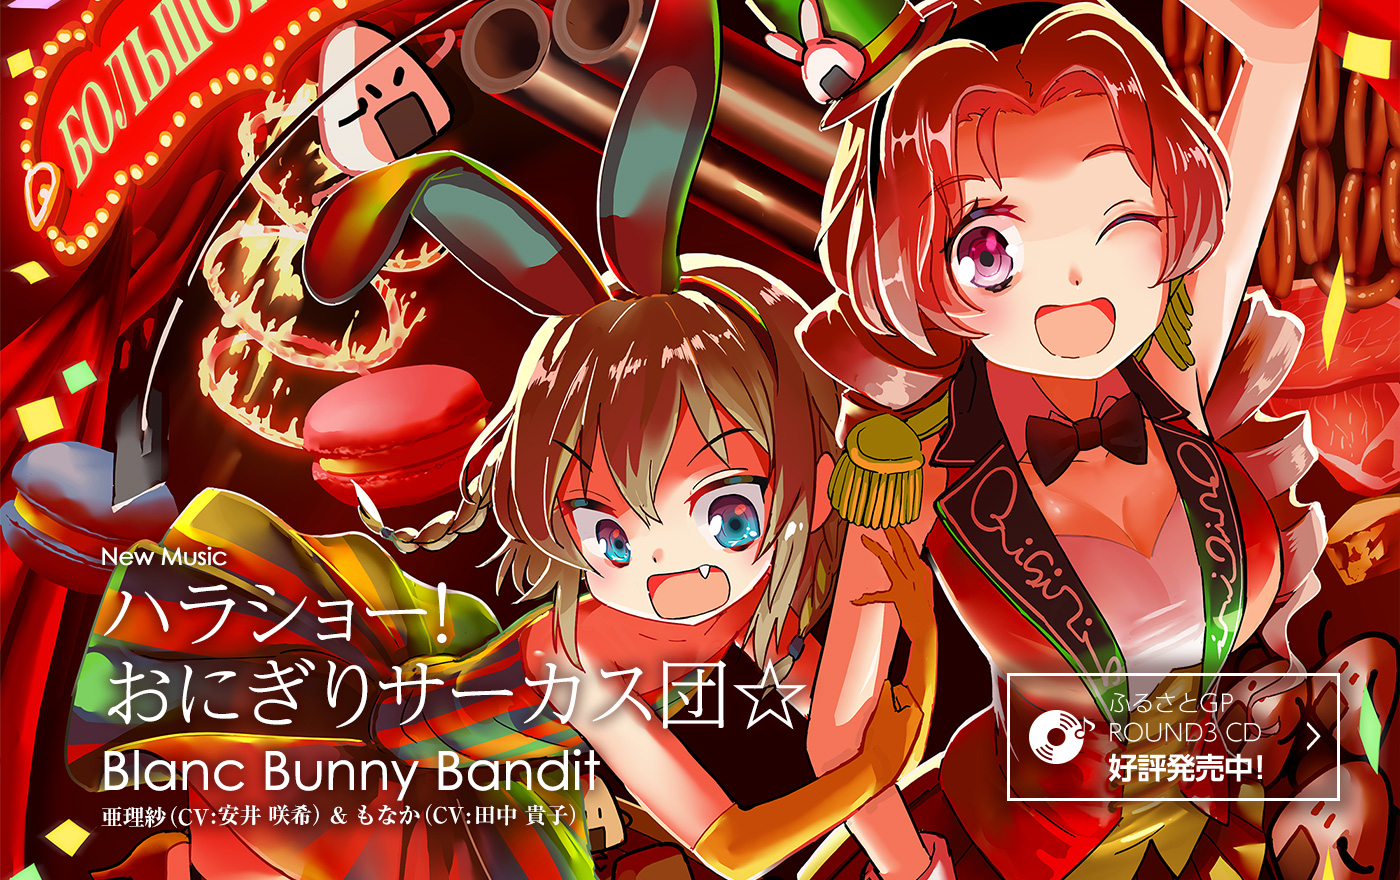 New Music ハラショー！おにぎりサーカス団☆ Blanc Bunny Bandit 亜理紗（CV：安井 咲希）& もなか（CV：田中 貴子）